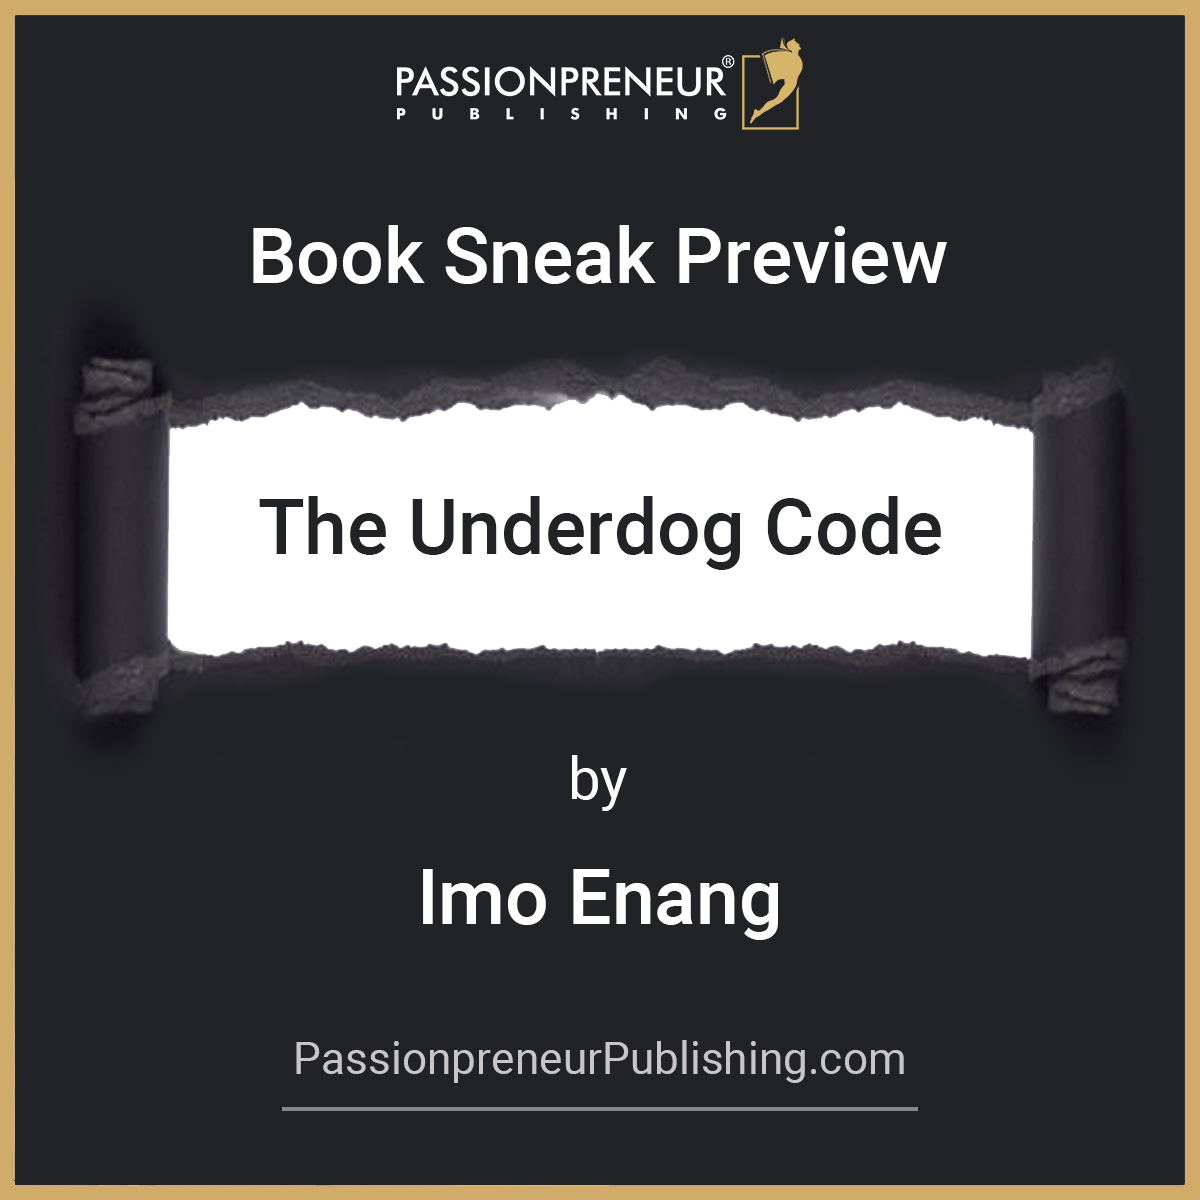 Book Sneak Preview Imowo Enang Book